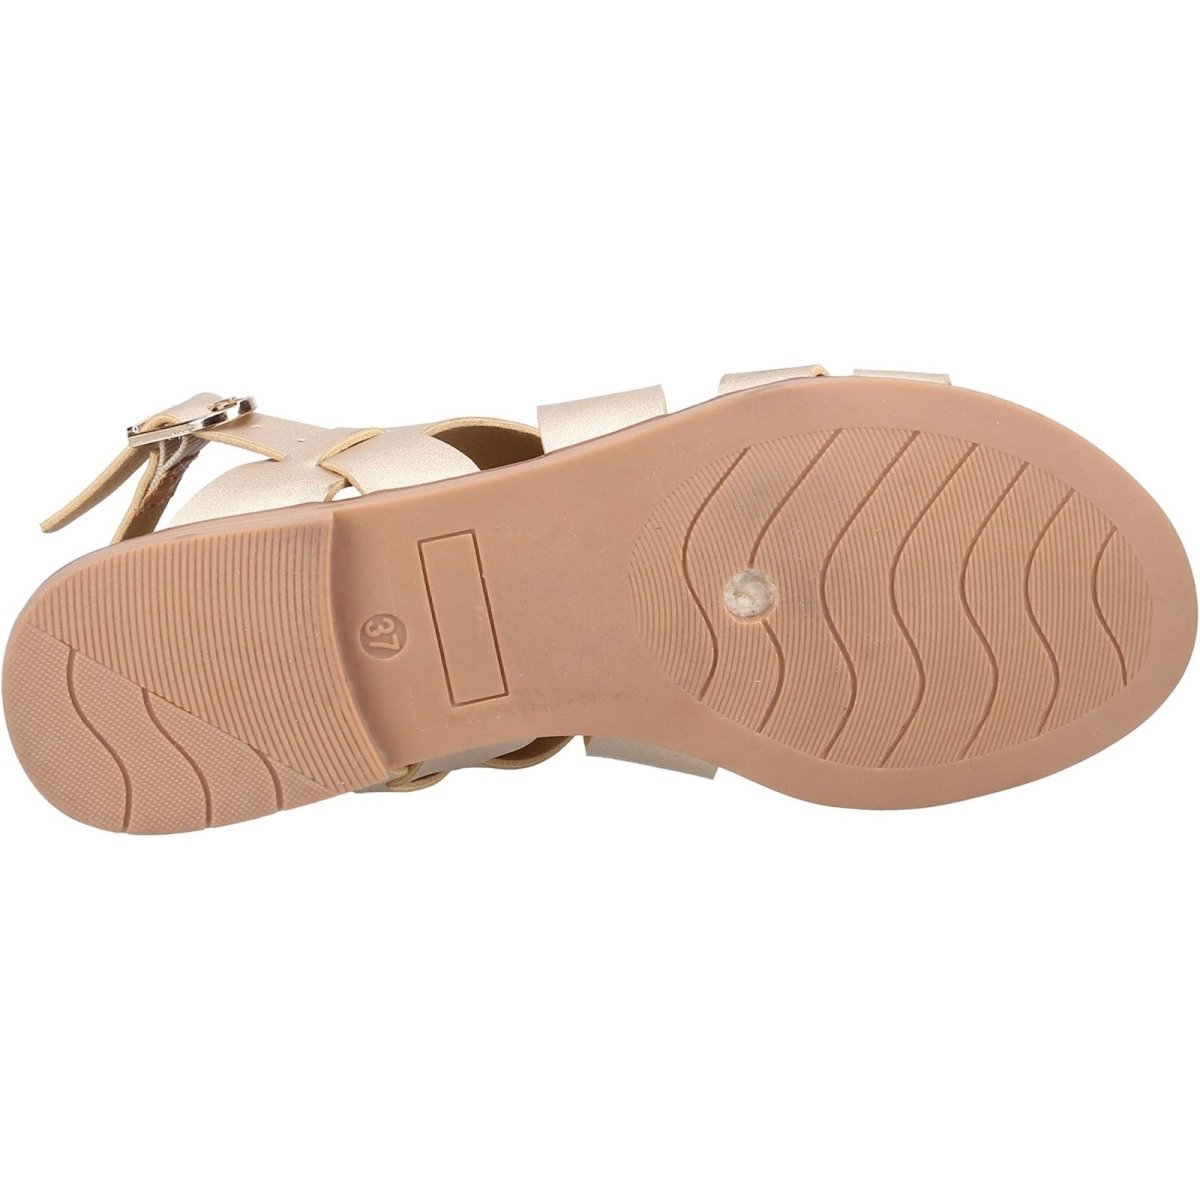 Divaz Sienna Ladies Vegan-Friendly Summer Sandals - Shoe Store Direct